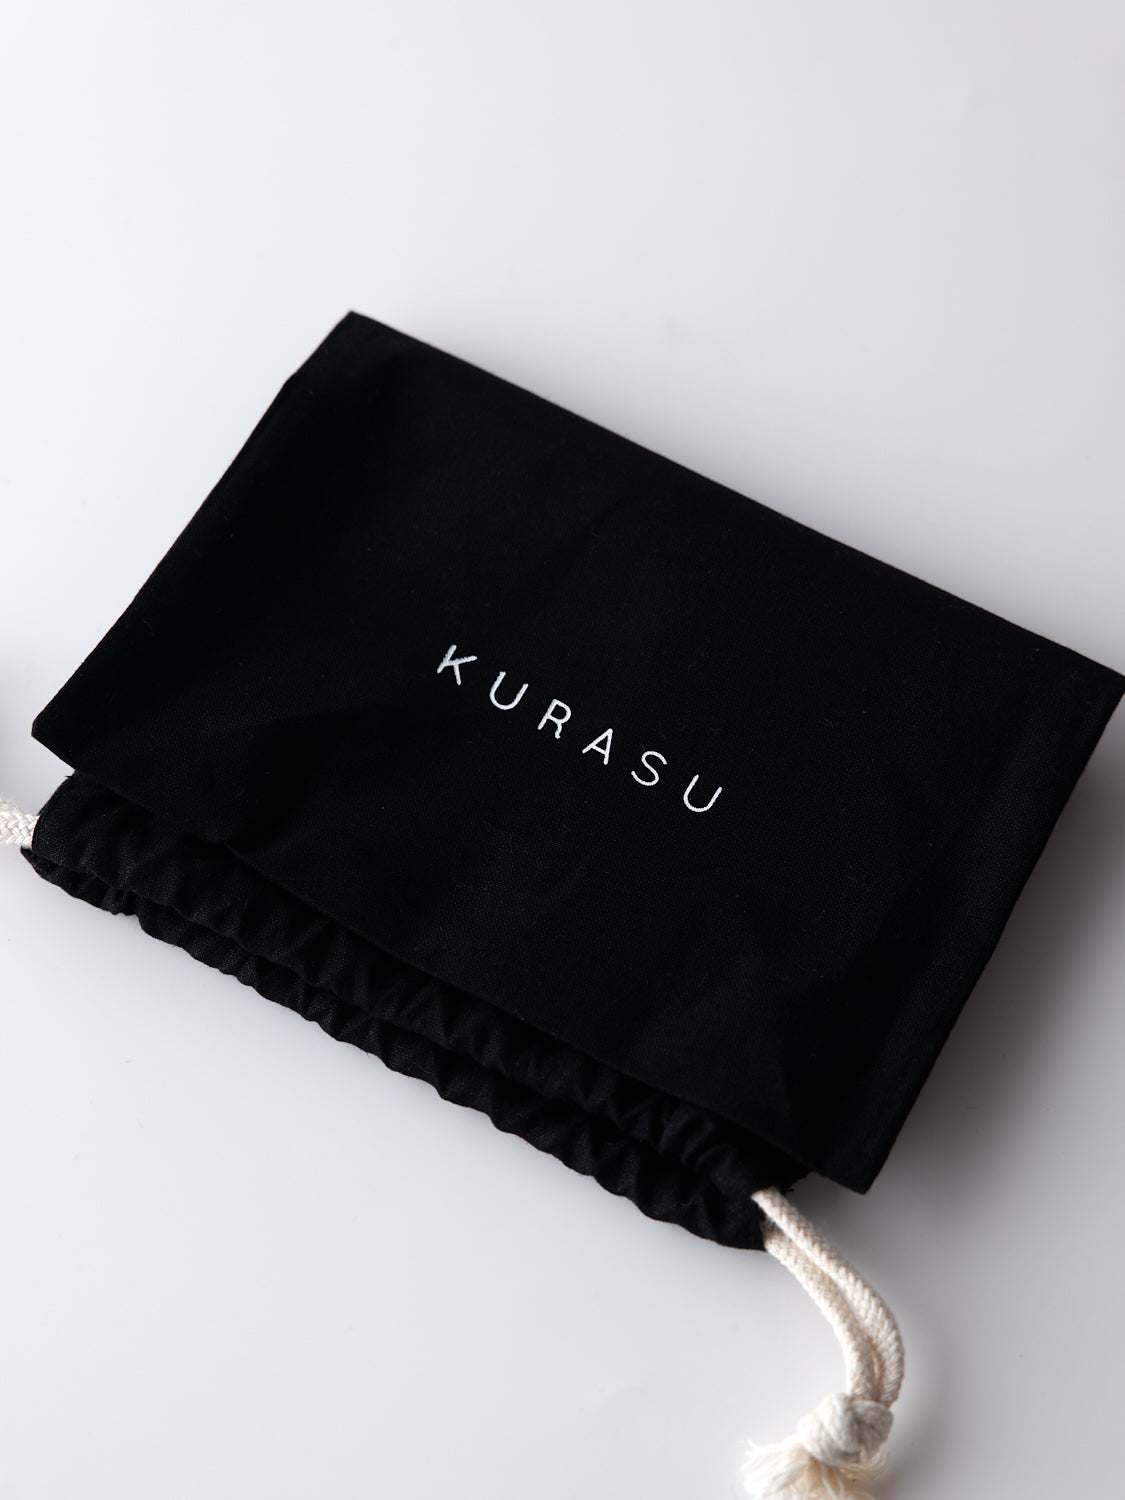 Kurasu オリジナル巾着